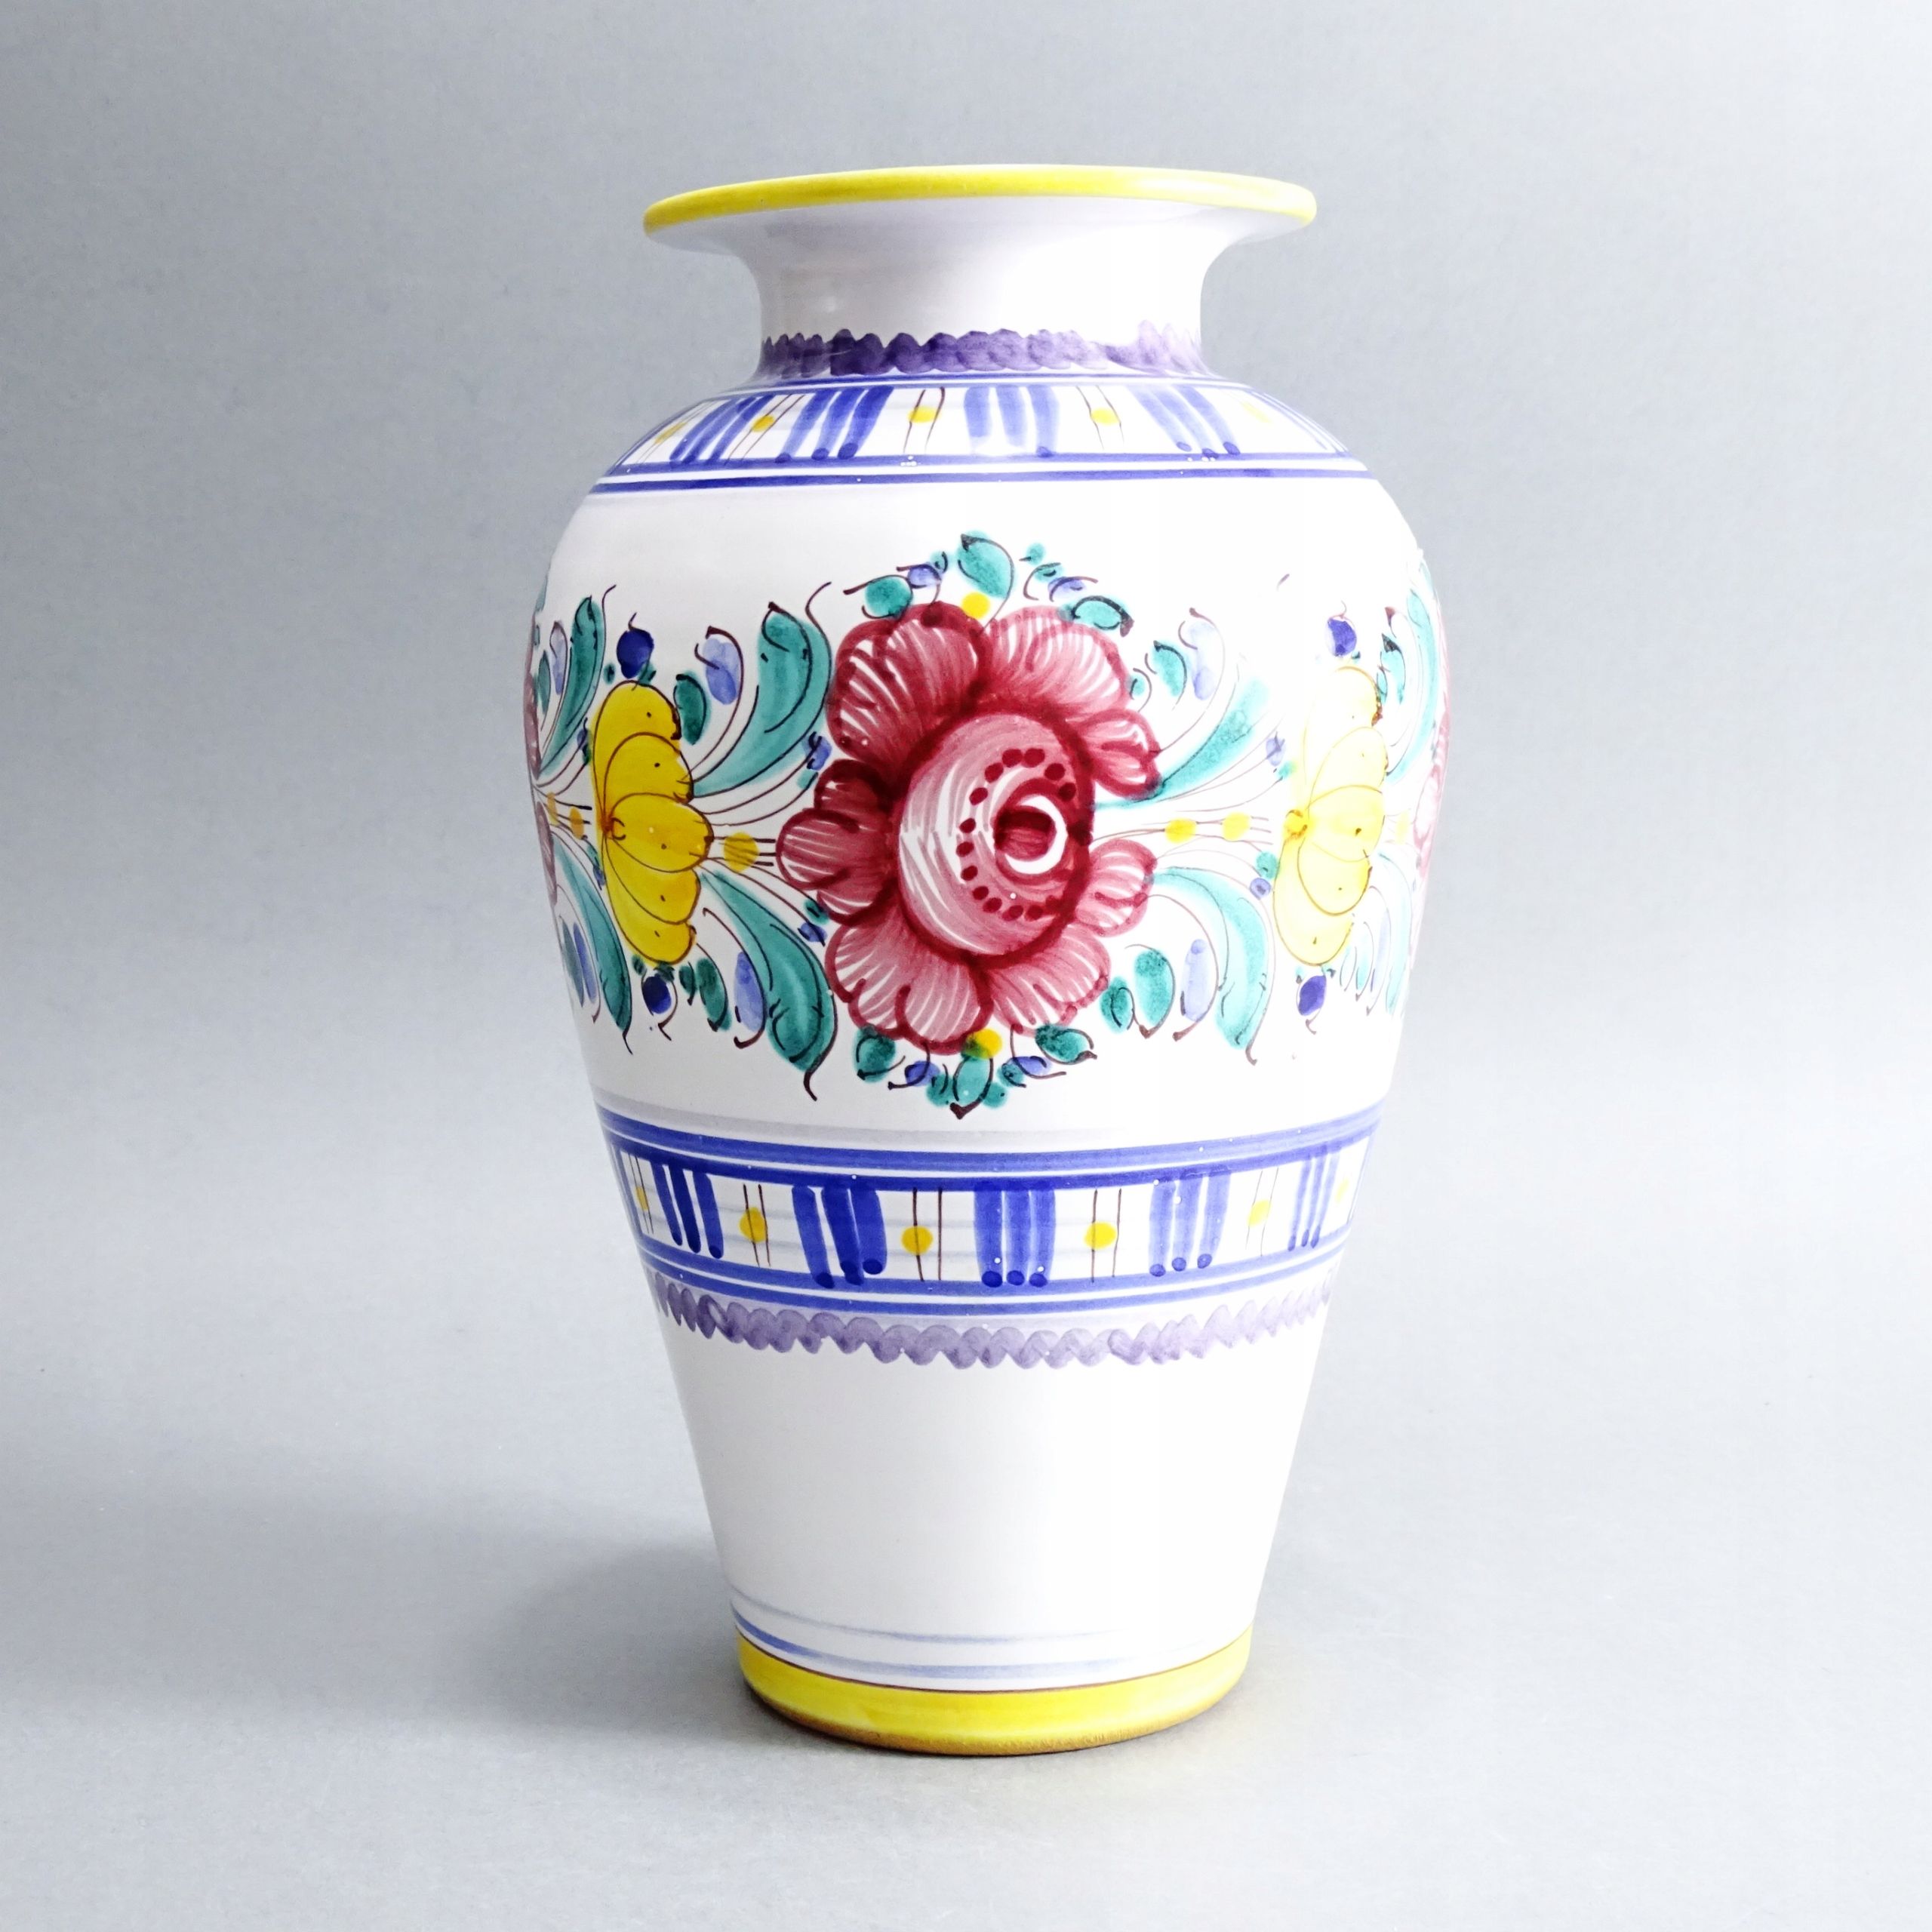 ceramika słowacka piękny duży malowany wazon w stylu ludowym